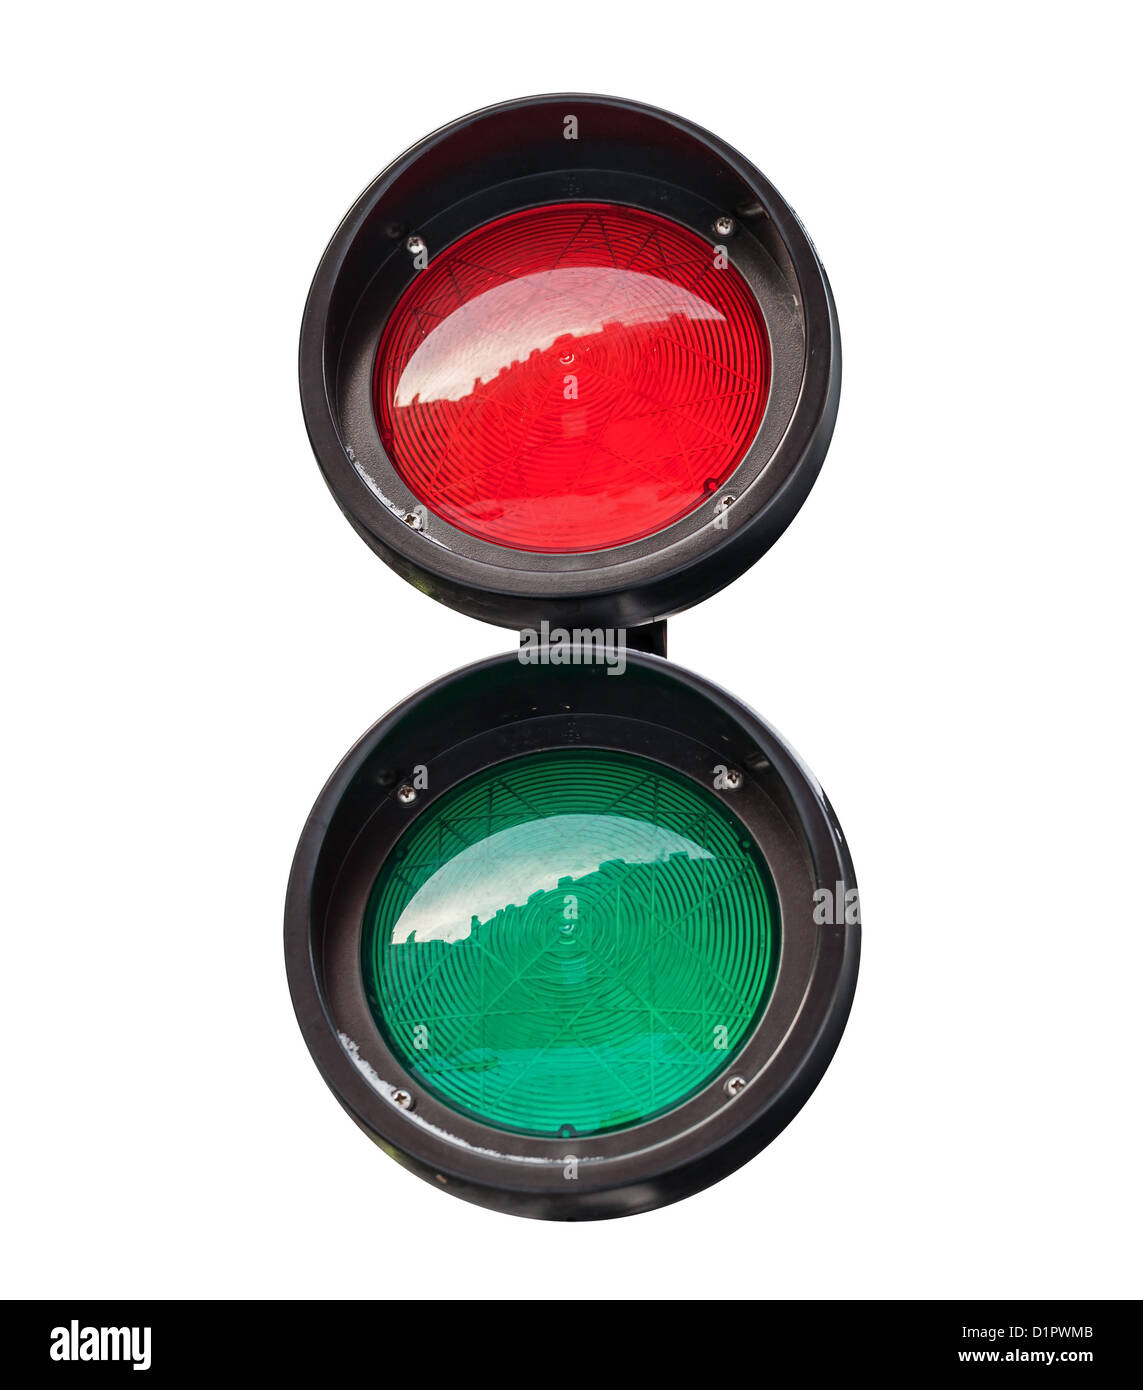 El rojo y el verde redondo pequeño semáforo aislado en blanco Foto de stock